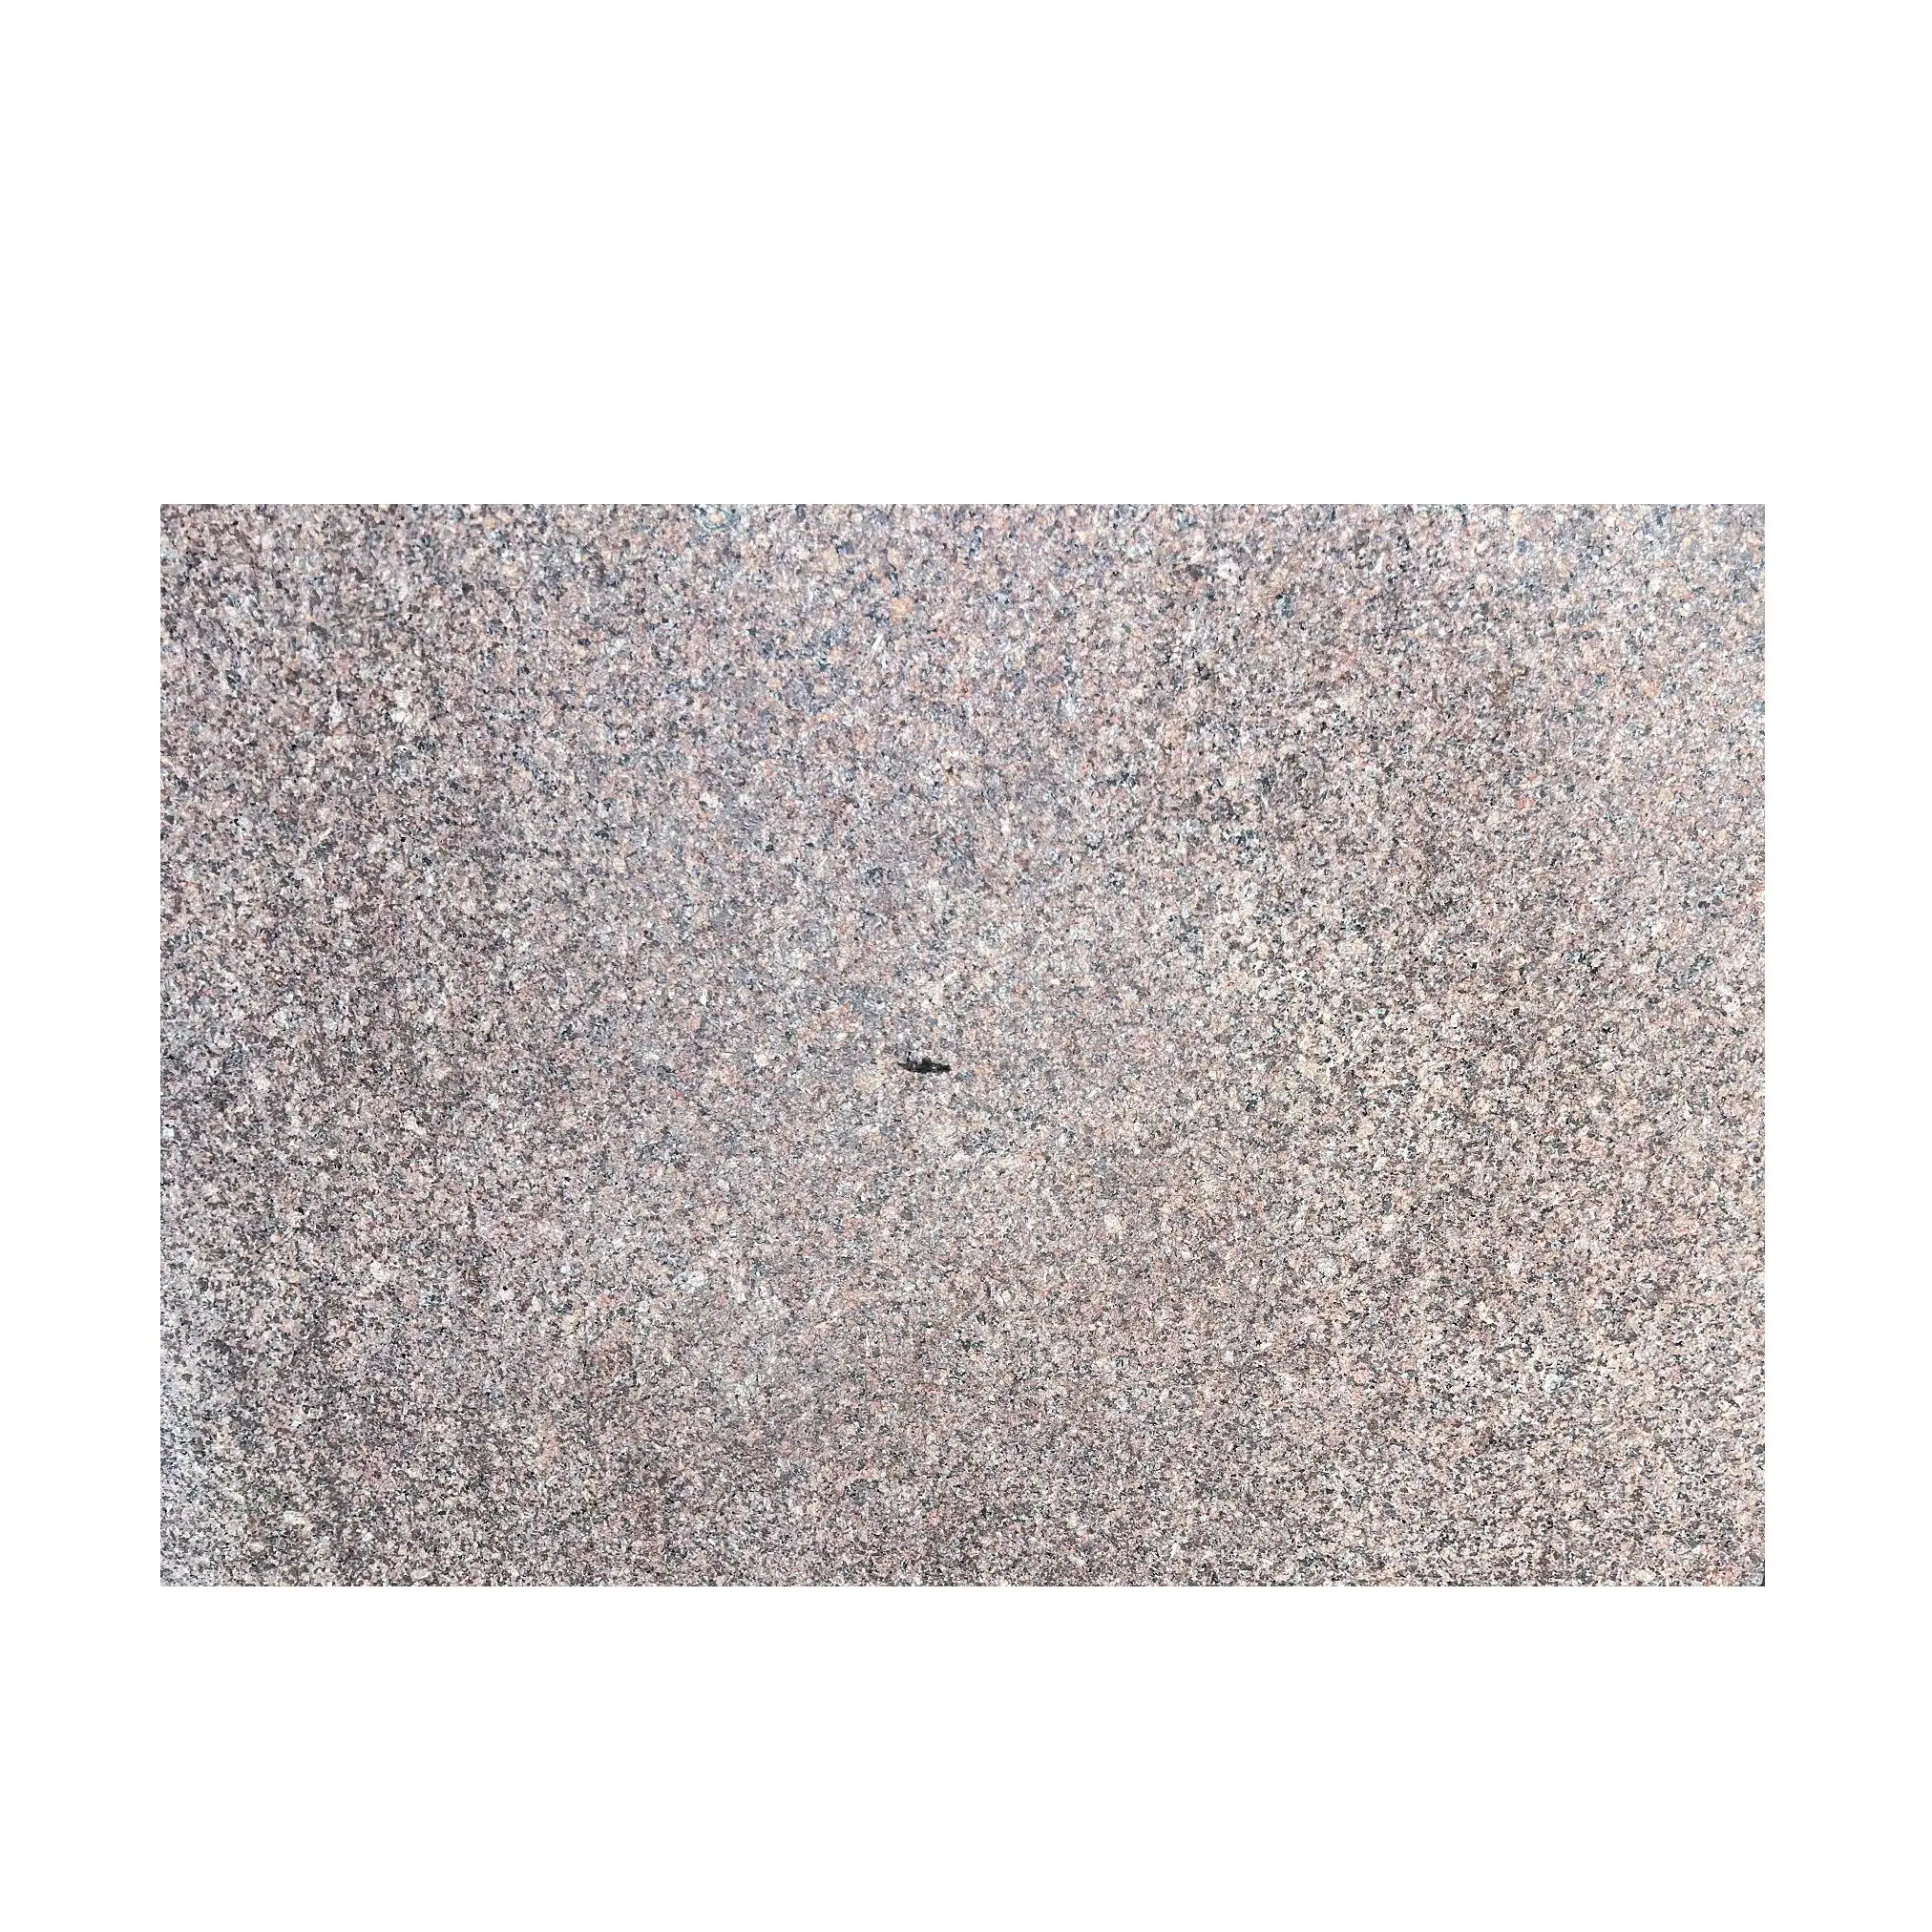 Hindistan'dan ev ve ofis uygulaması için Kharda kırmızı granit döşeme doğal taş ihracatçısı ve tedarikçisi